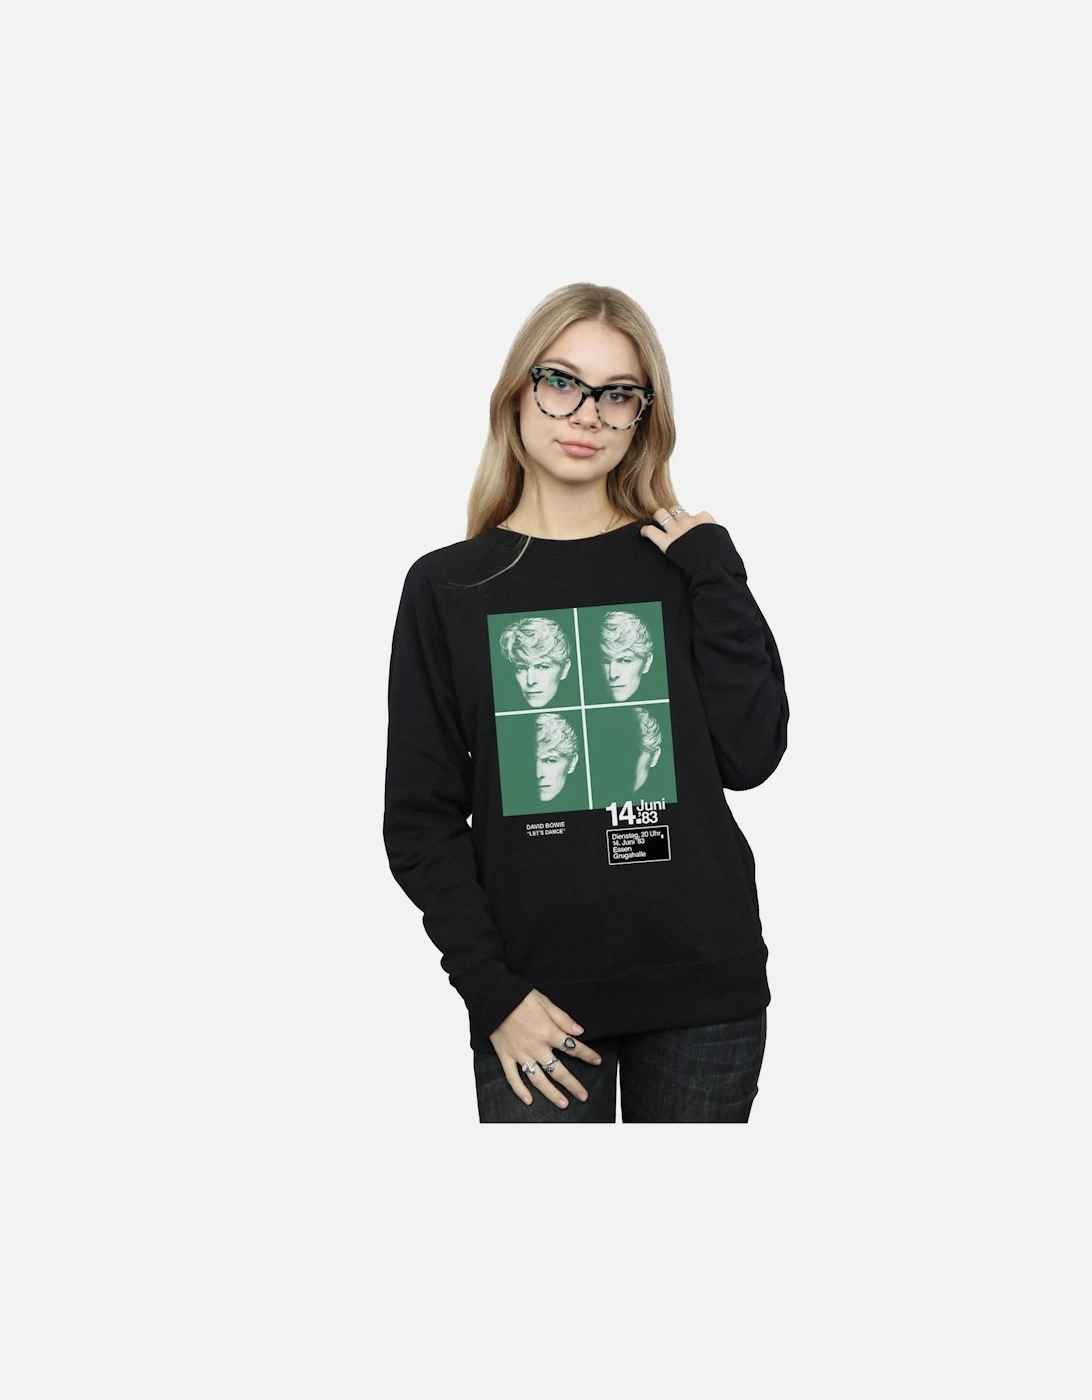 Womens/Ladies 1983 Concert Poster Sweatshirt